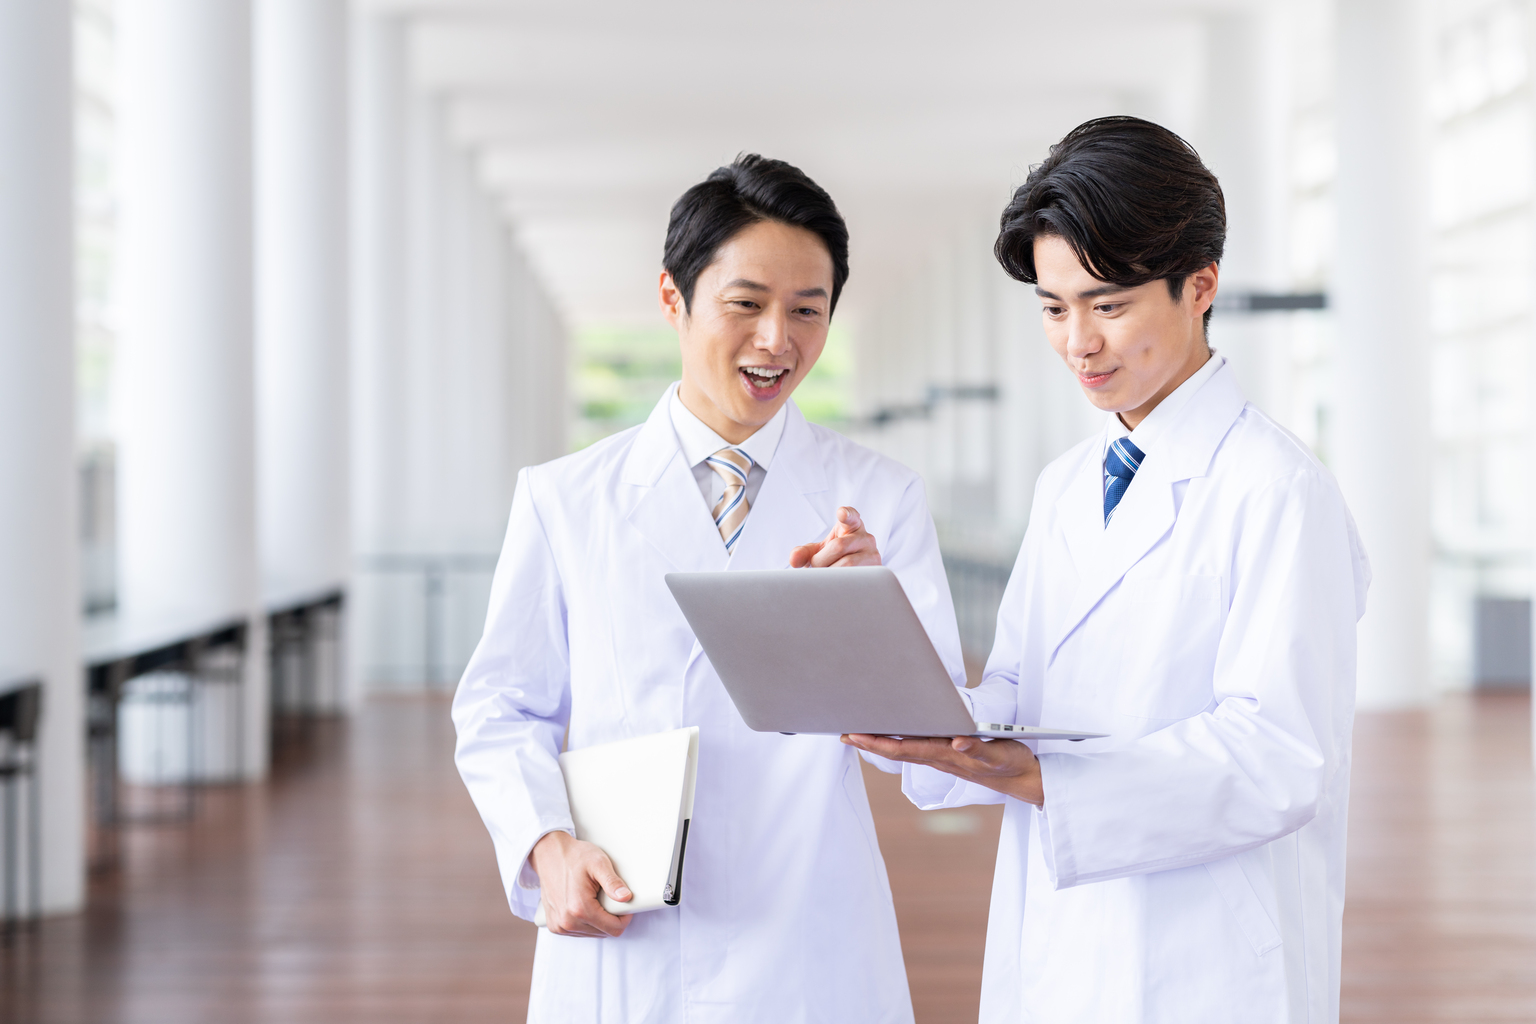 福島県立医科大学附属病院、医師の医学知識のアップデートと、学生の臨床能力向上を目指し、UpToDateを利用